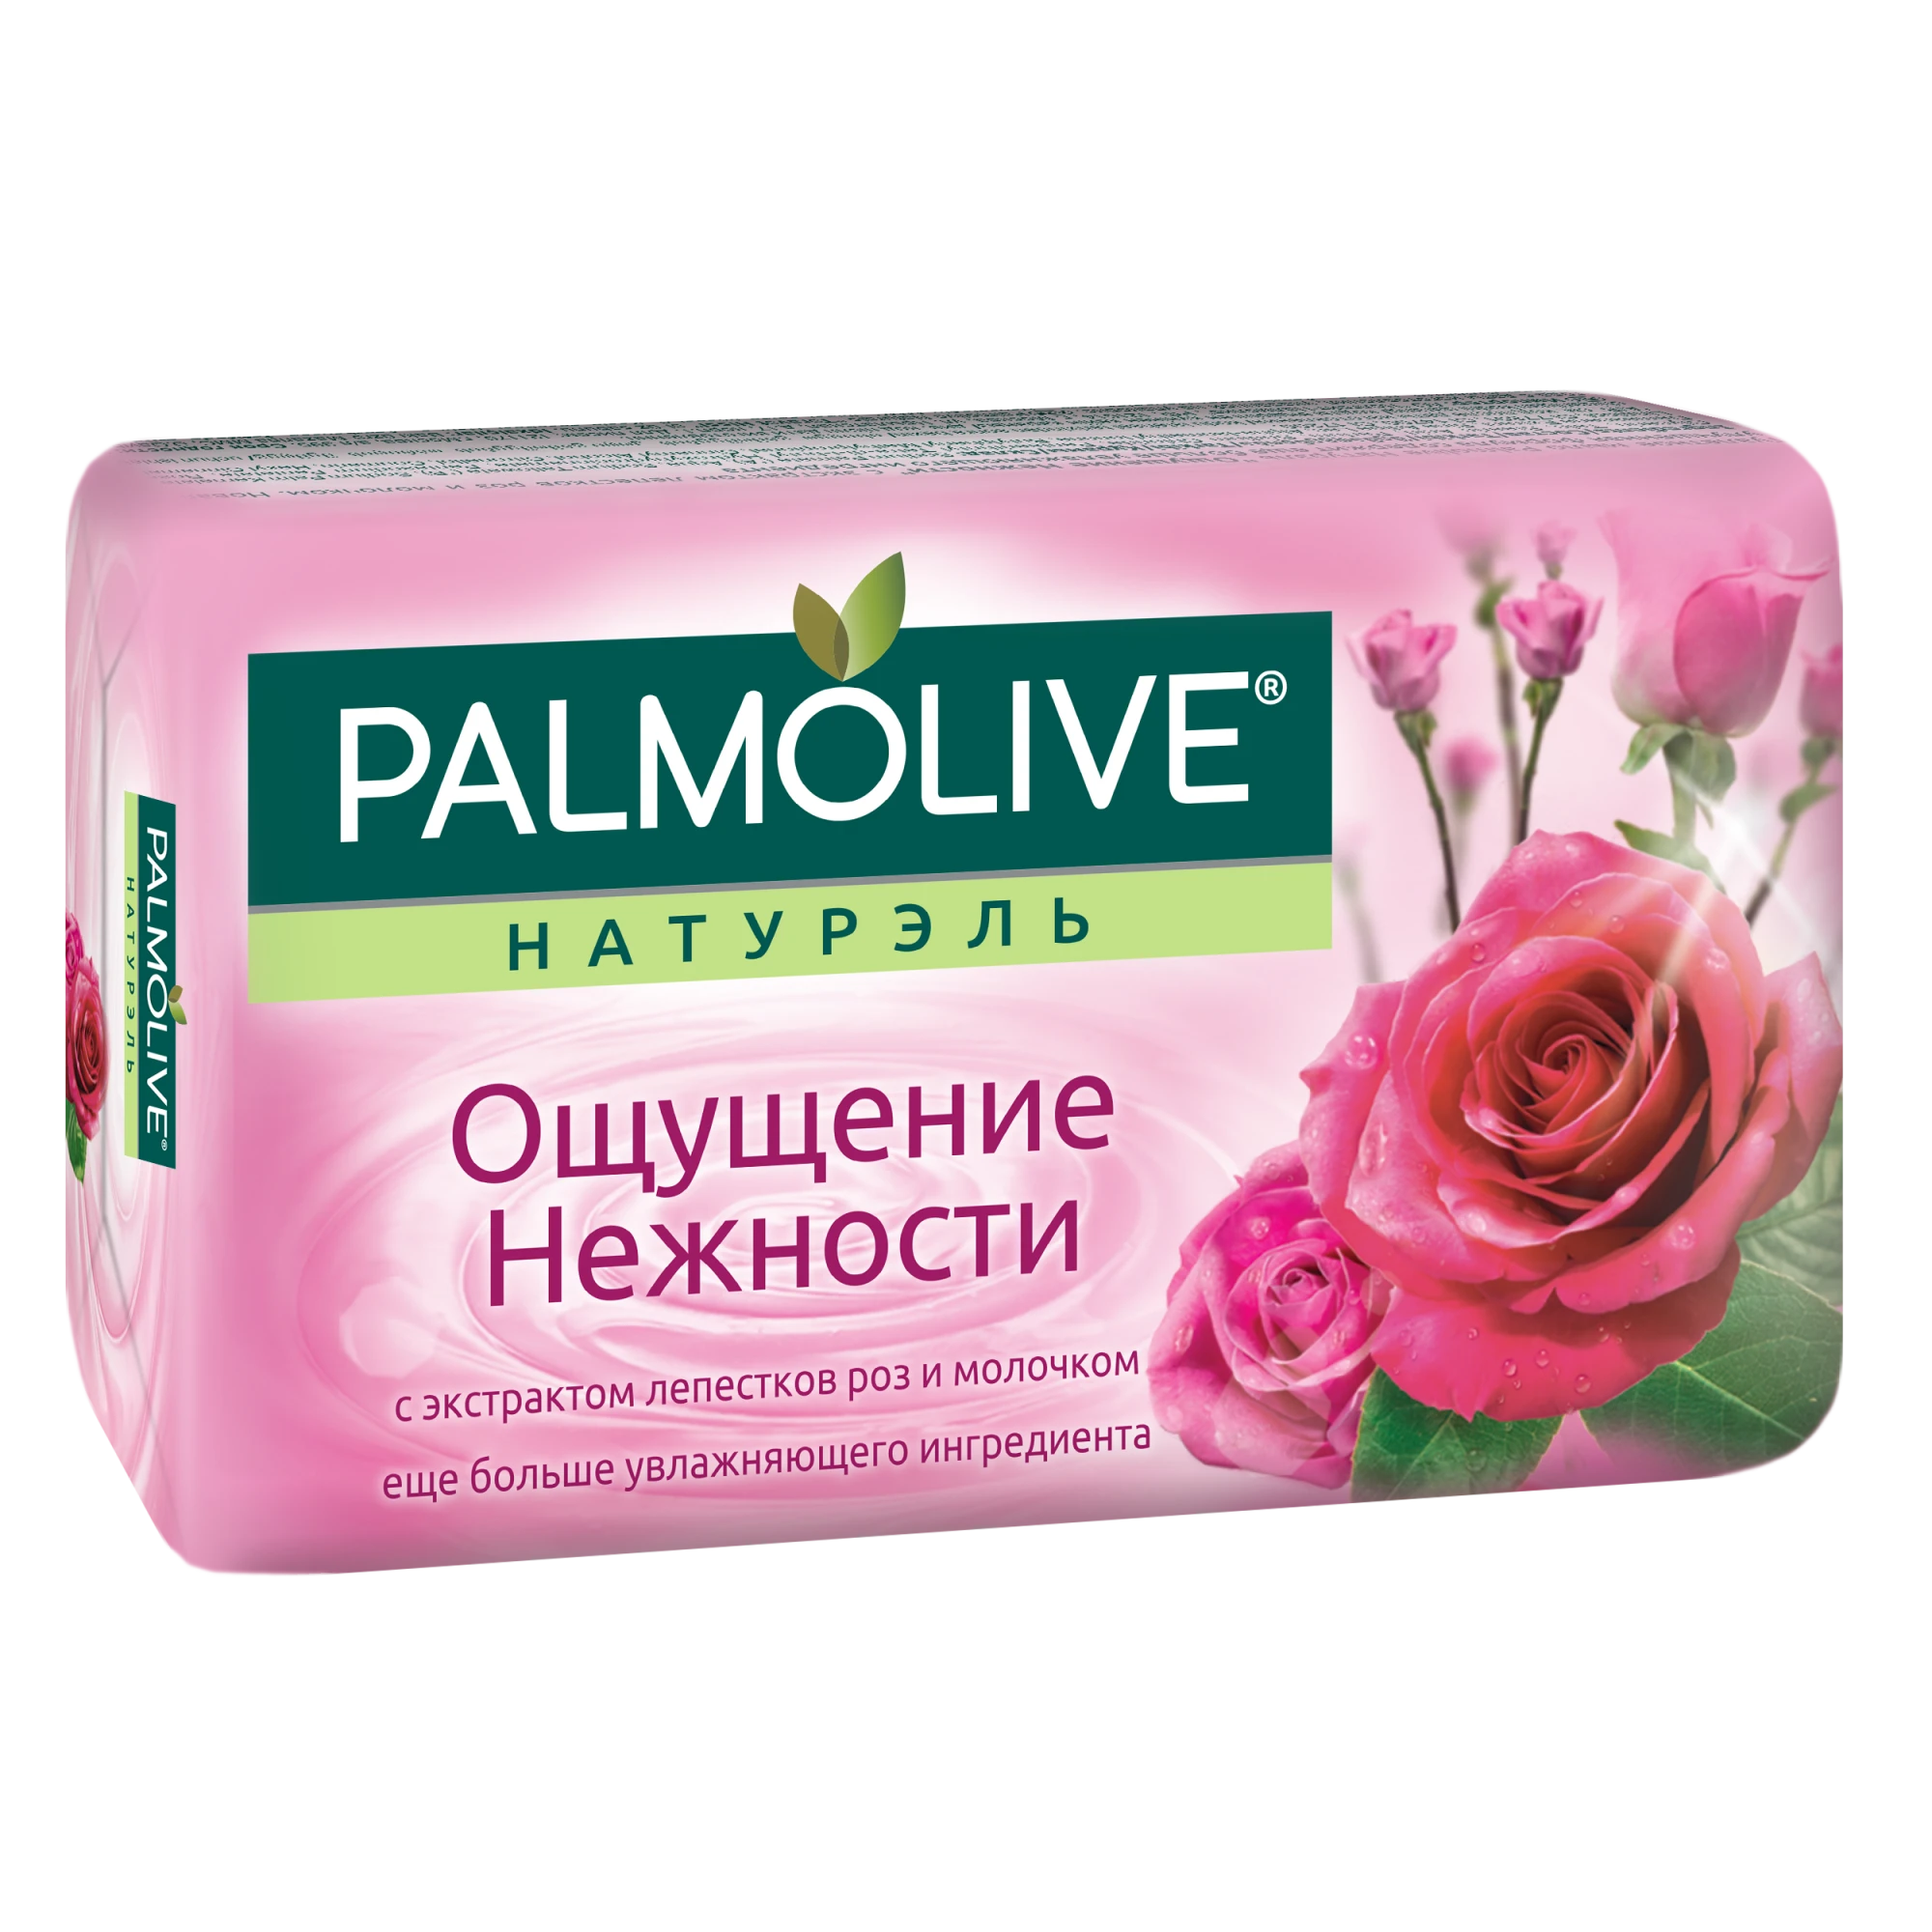 Palmolive мыло 90г. ОЩУЩЕНИЕ НЕЖНОСТИ Роза и молоко (22534)